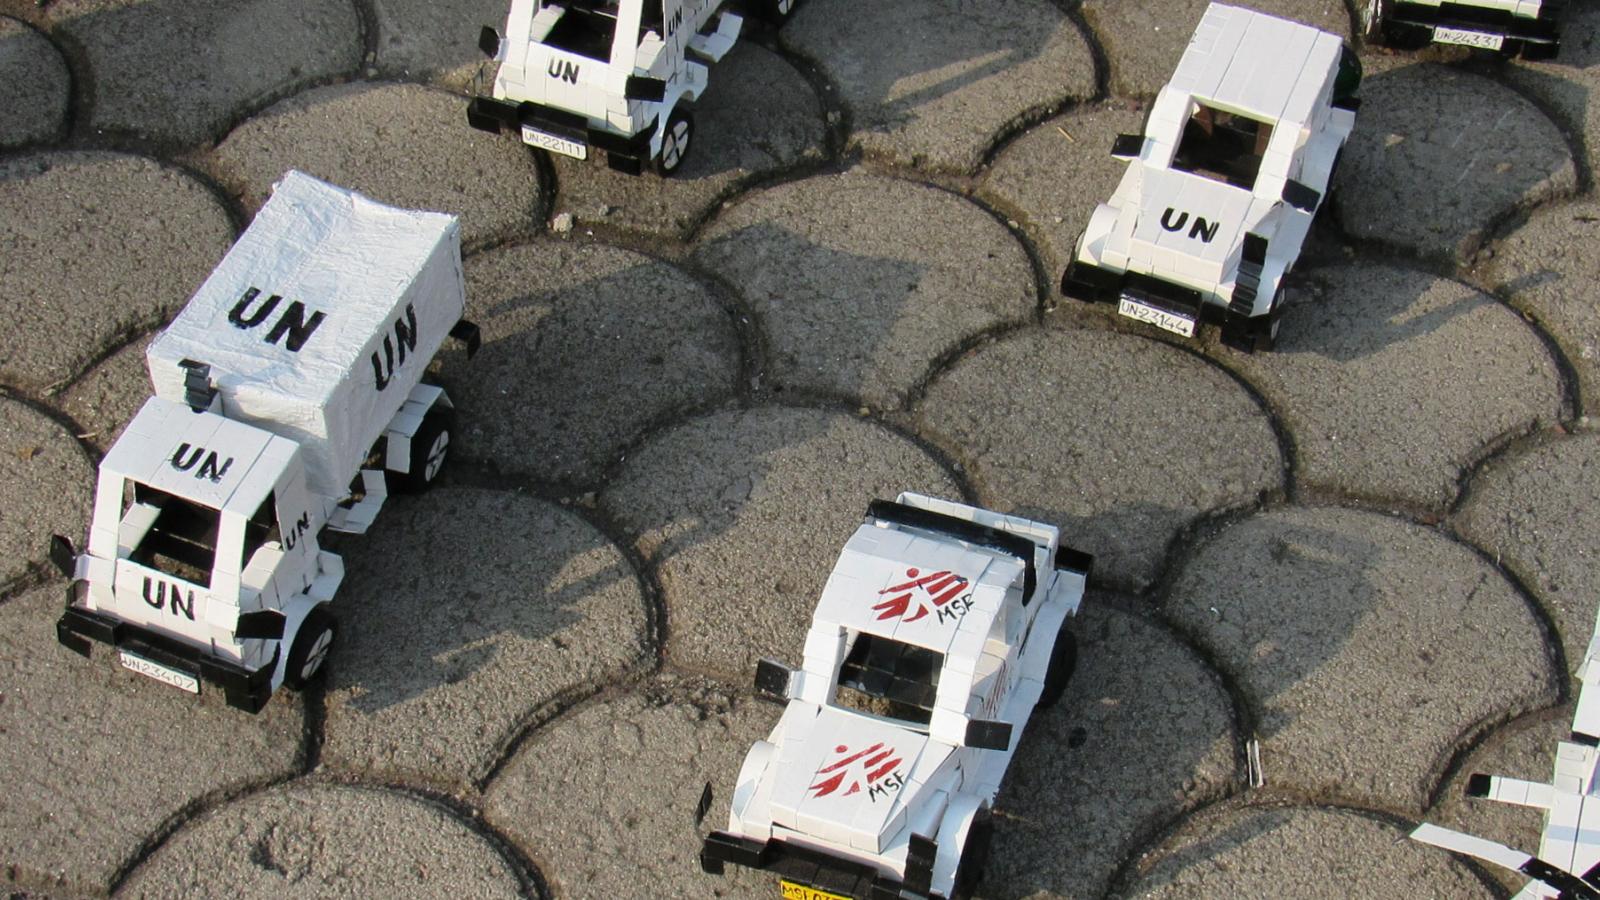 Models of humanitarian vehicles